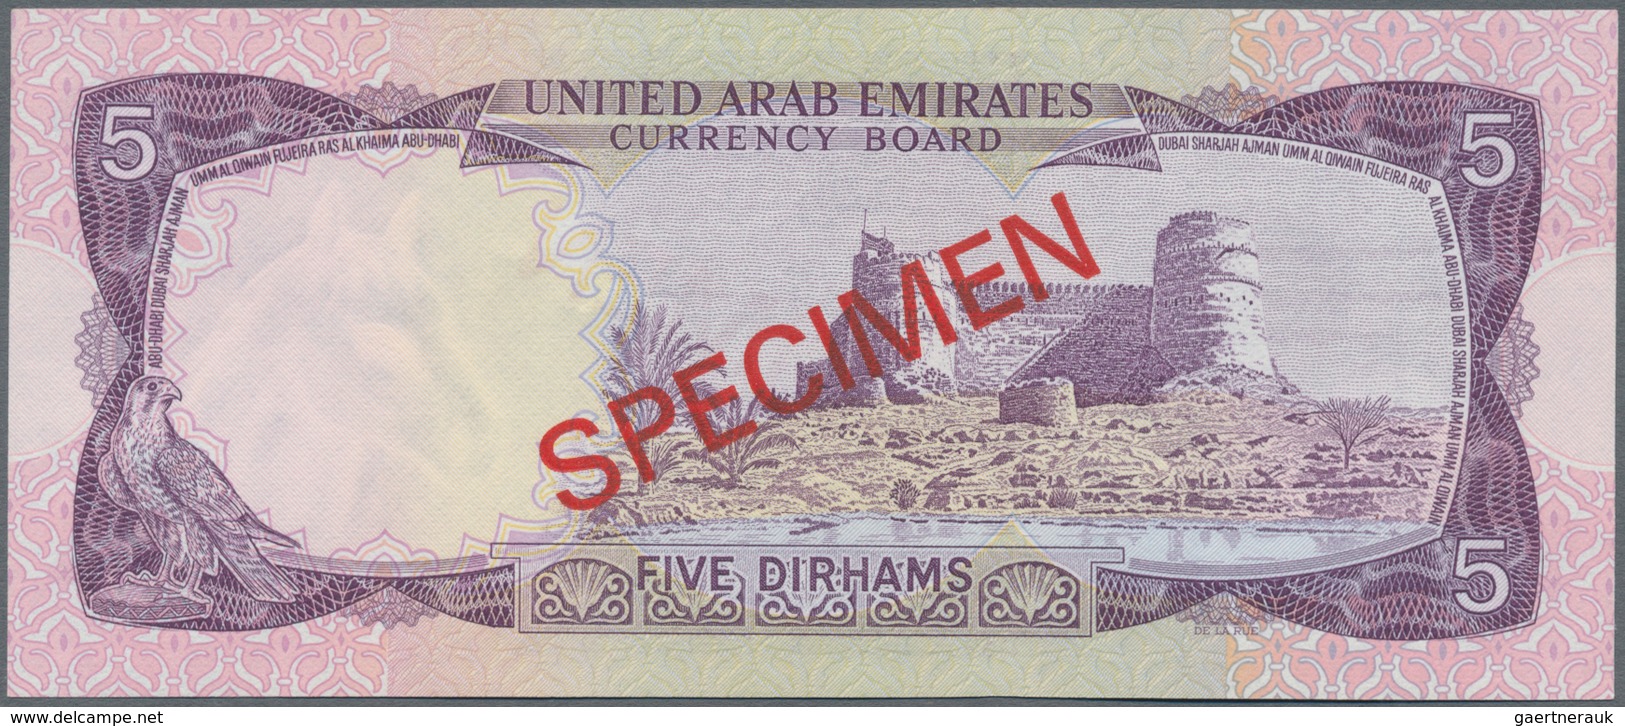 United Arab Emirates / Vereinigte Arabische Emirate: United Arab Emirates Currency Board 5 Dirhams N - Ver. Arab. Emirate